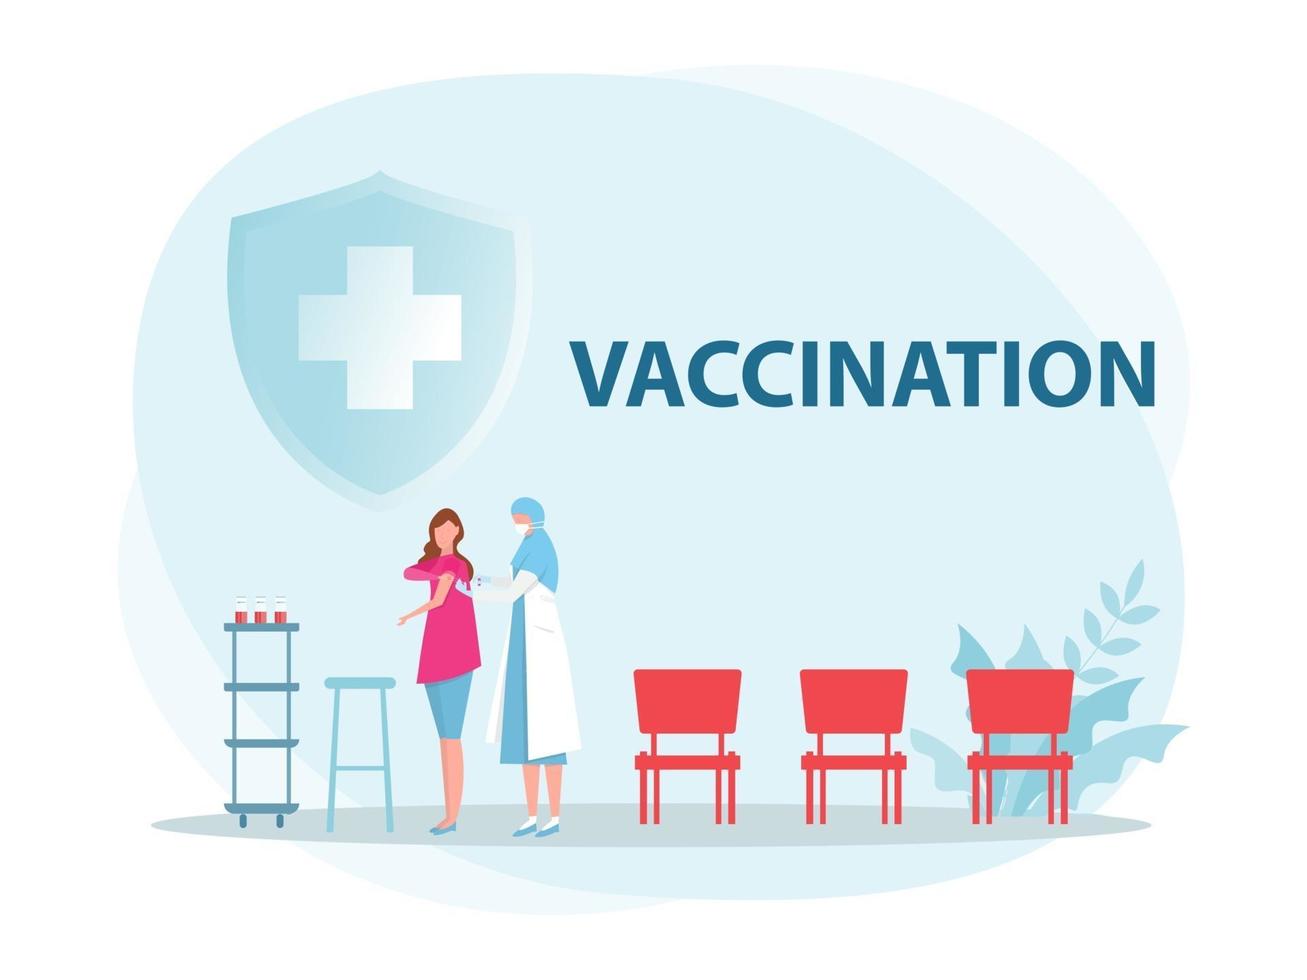 dottoressa con siringa dà vaccinazioni, medico vaccino sanitario, immunizzazione in illustratore vettoriale clinica.